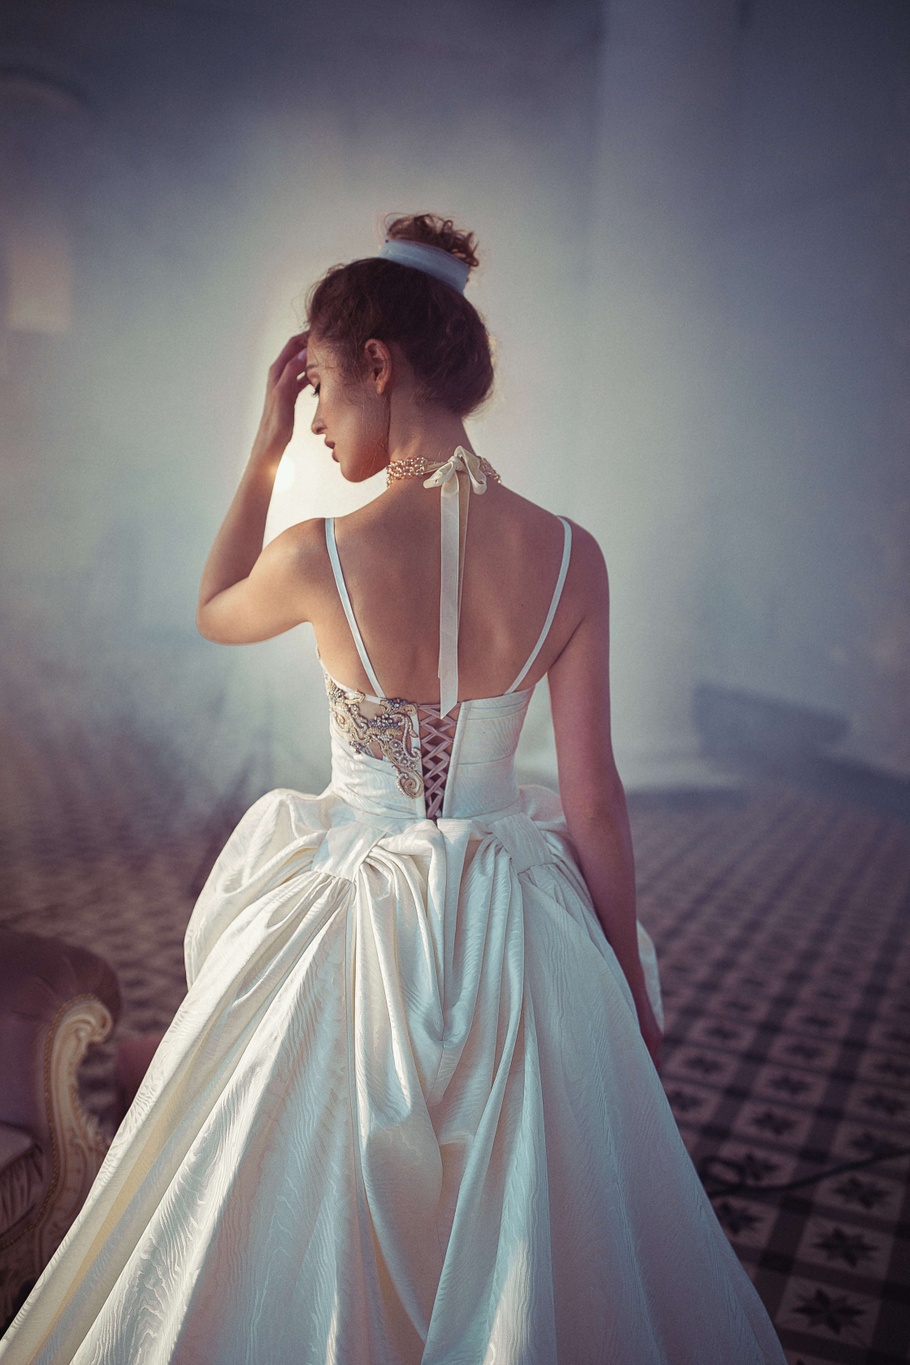 Купить свадебное платье «Хриса» Бламмо Биамо из коллекции Свит Лайф 2021 года в Санкт-Петербурге